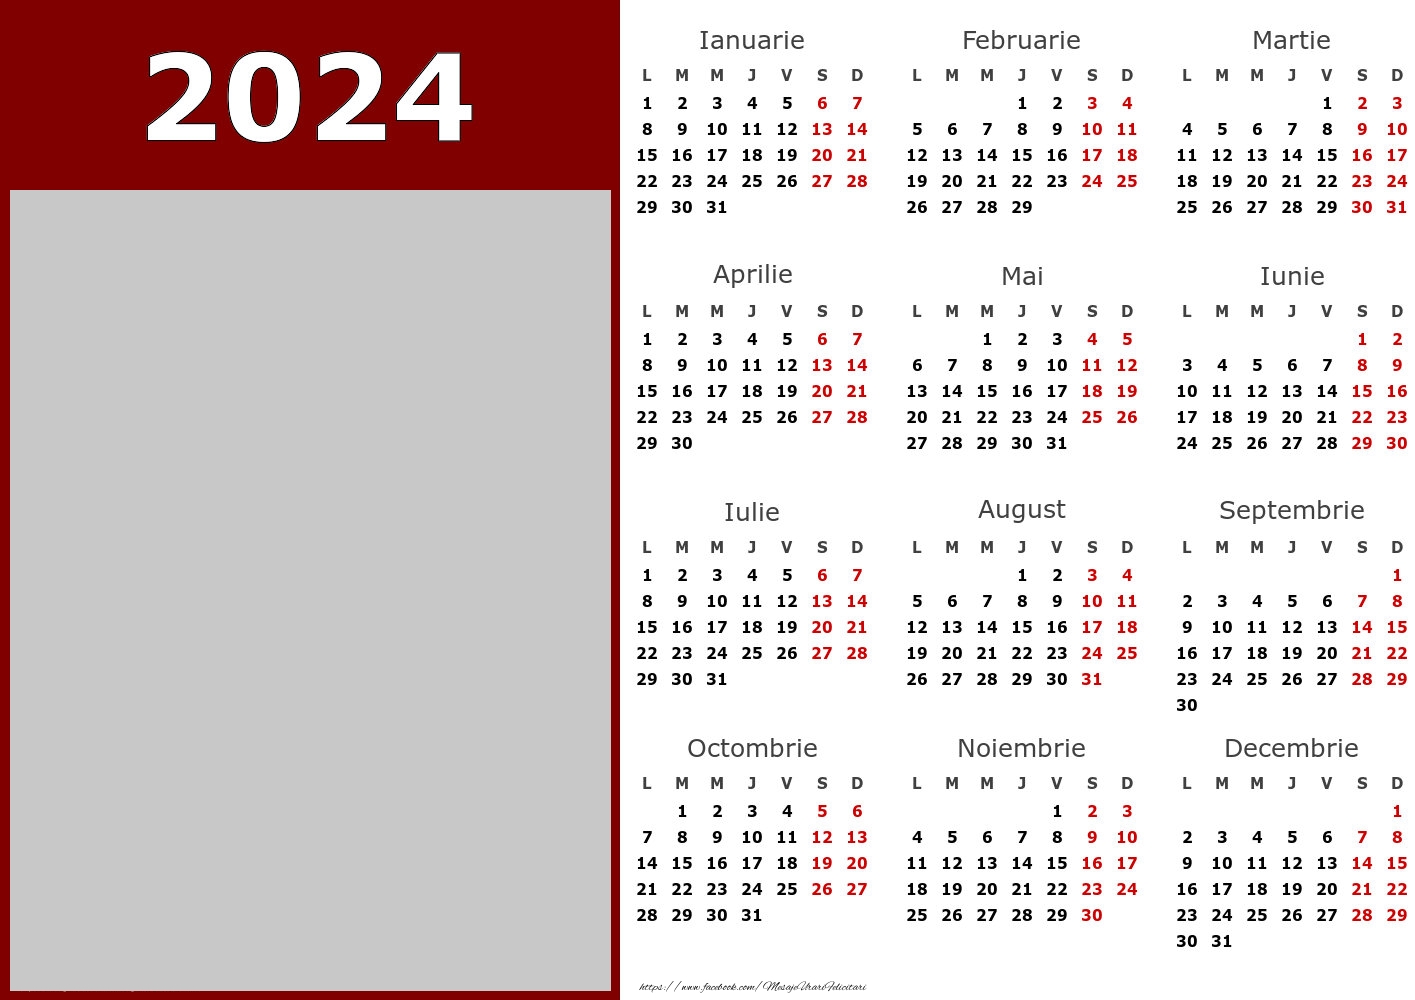 Felicitari personalizate cu calendare - Calendar 2024 - Business - Model 0068